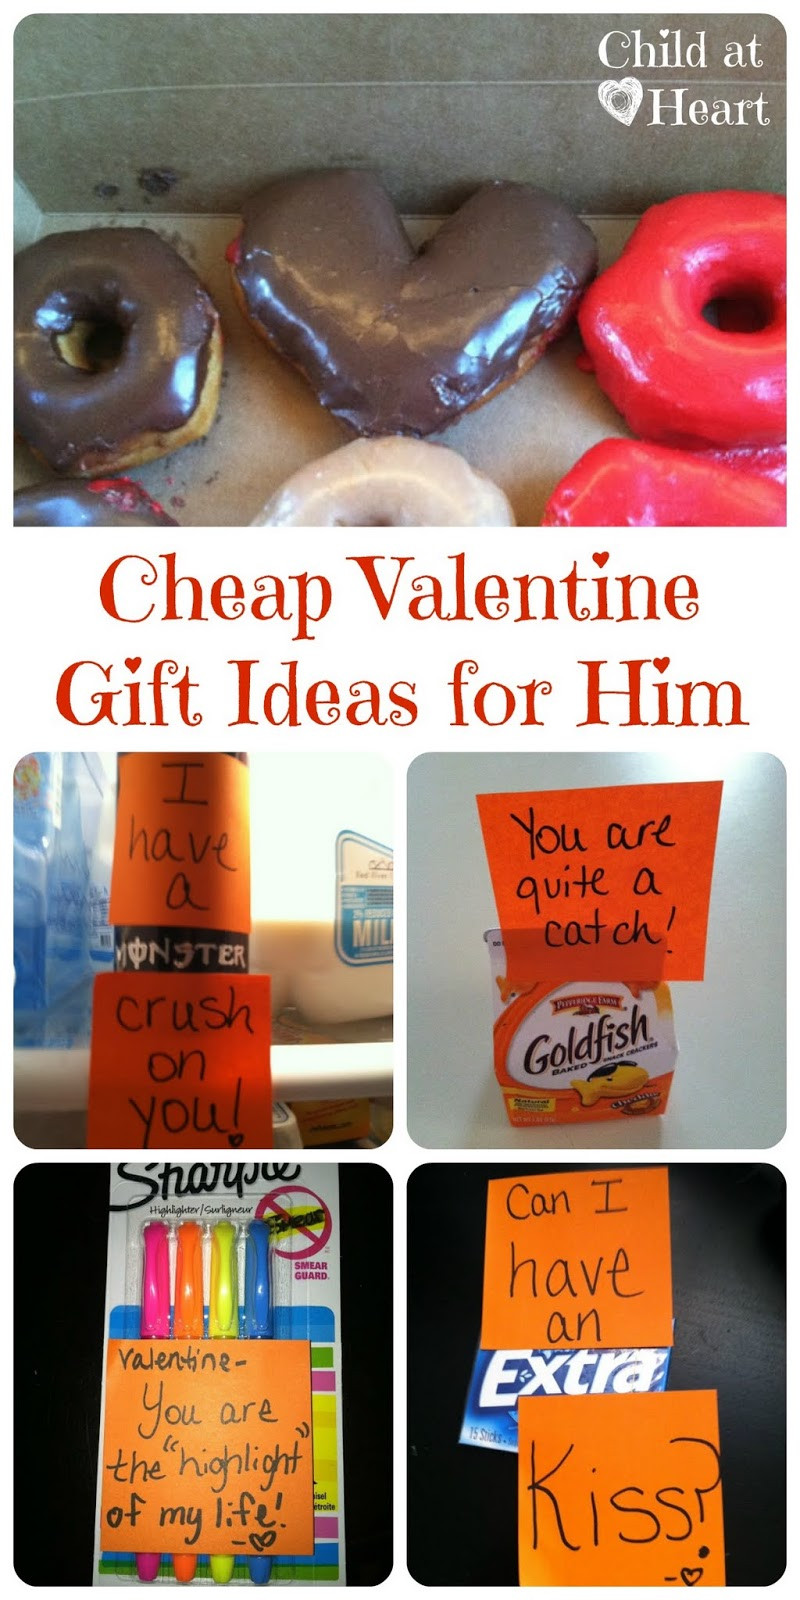 Valentine Boyfriend Gift Ideas
 Cheap Valentine Gift Ideas for Him Child at Heart Blog